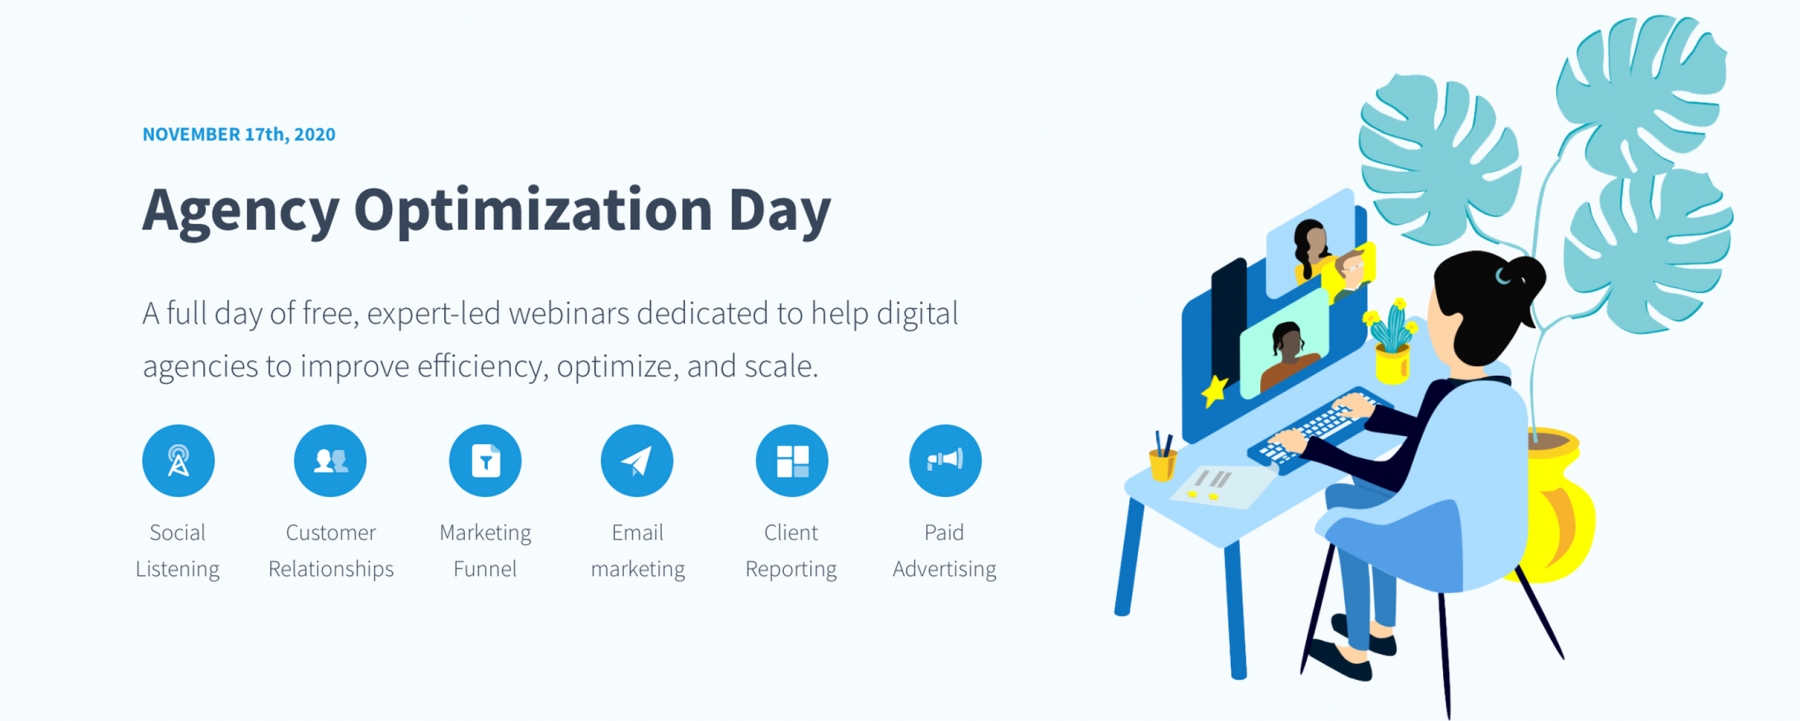 Agency Optimization Day, organisé par Mention le 17 novembre 